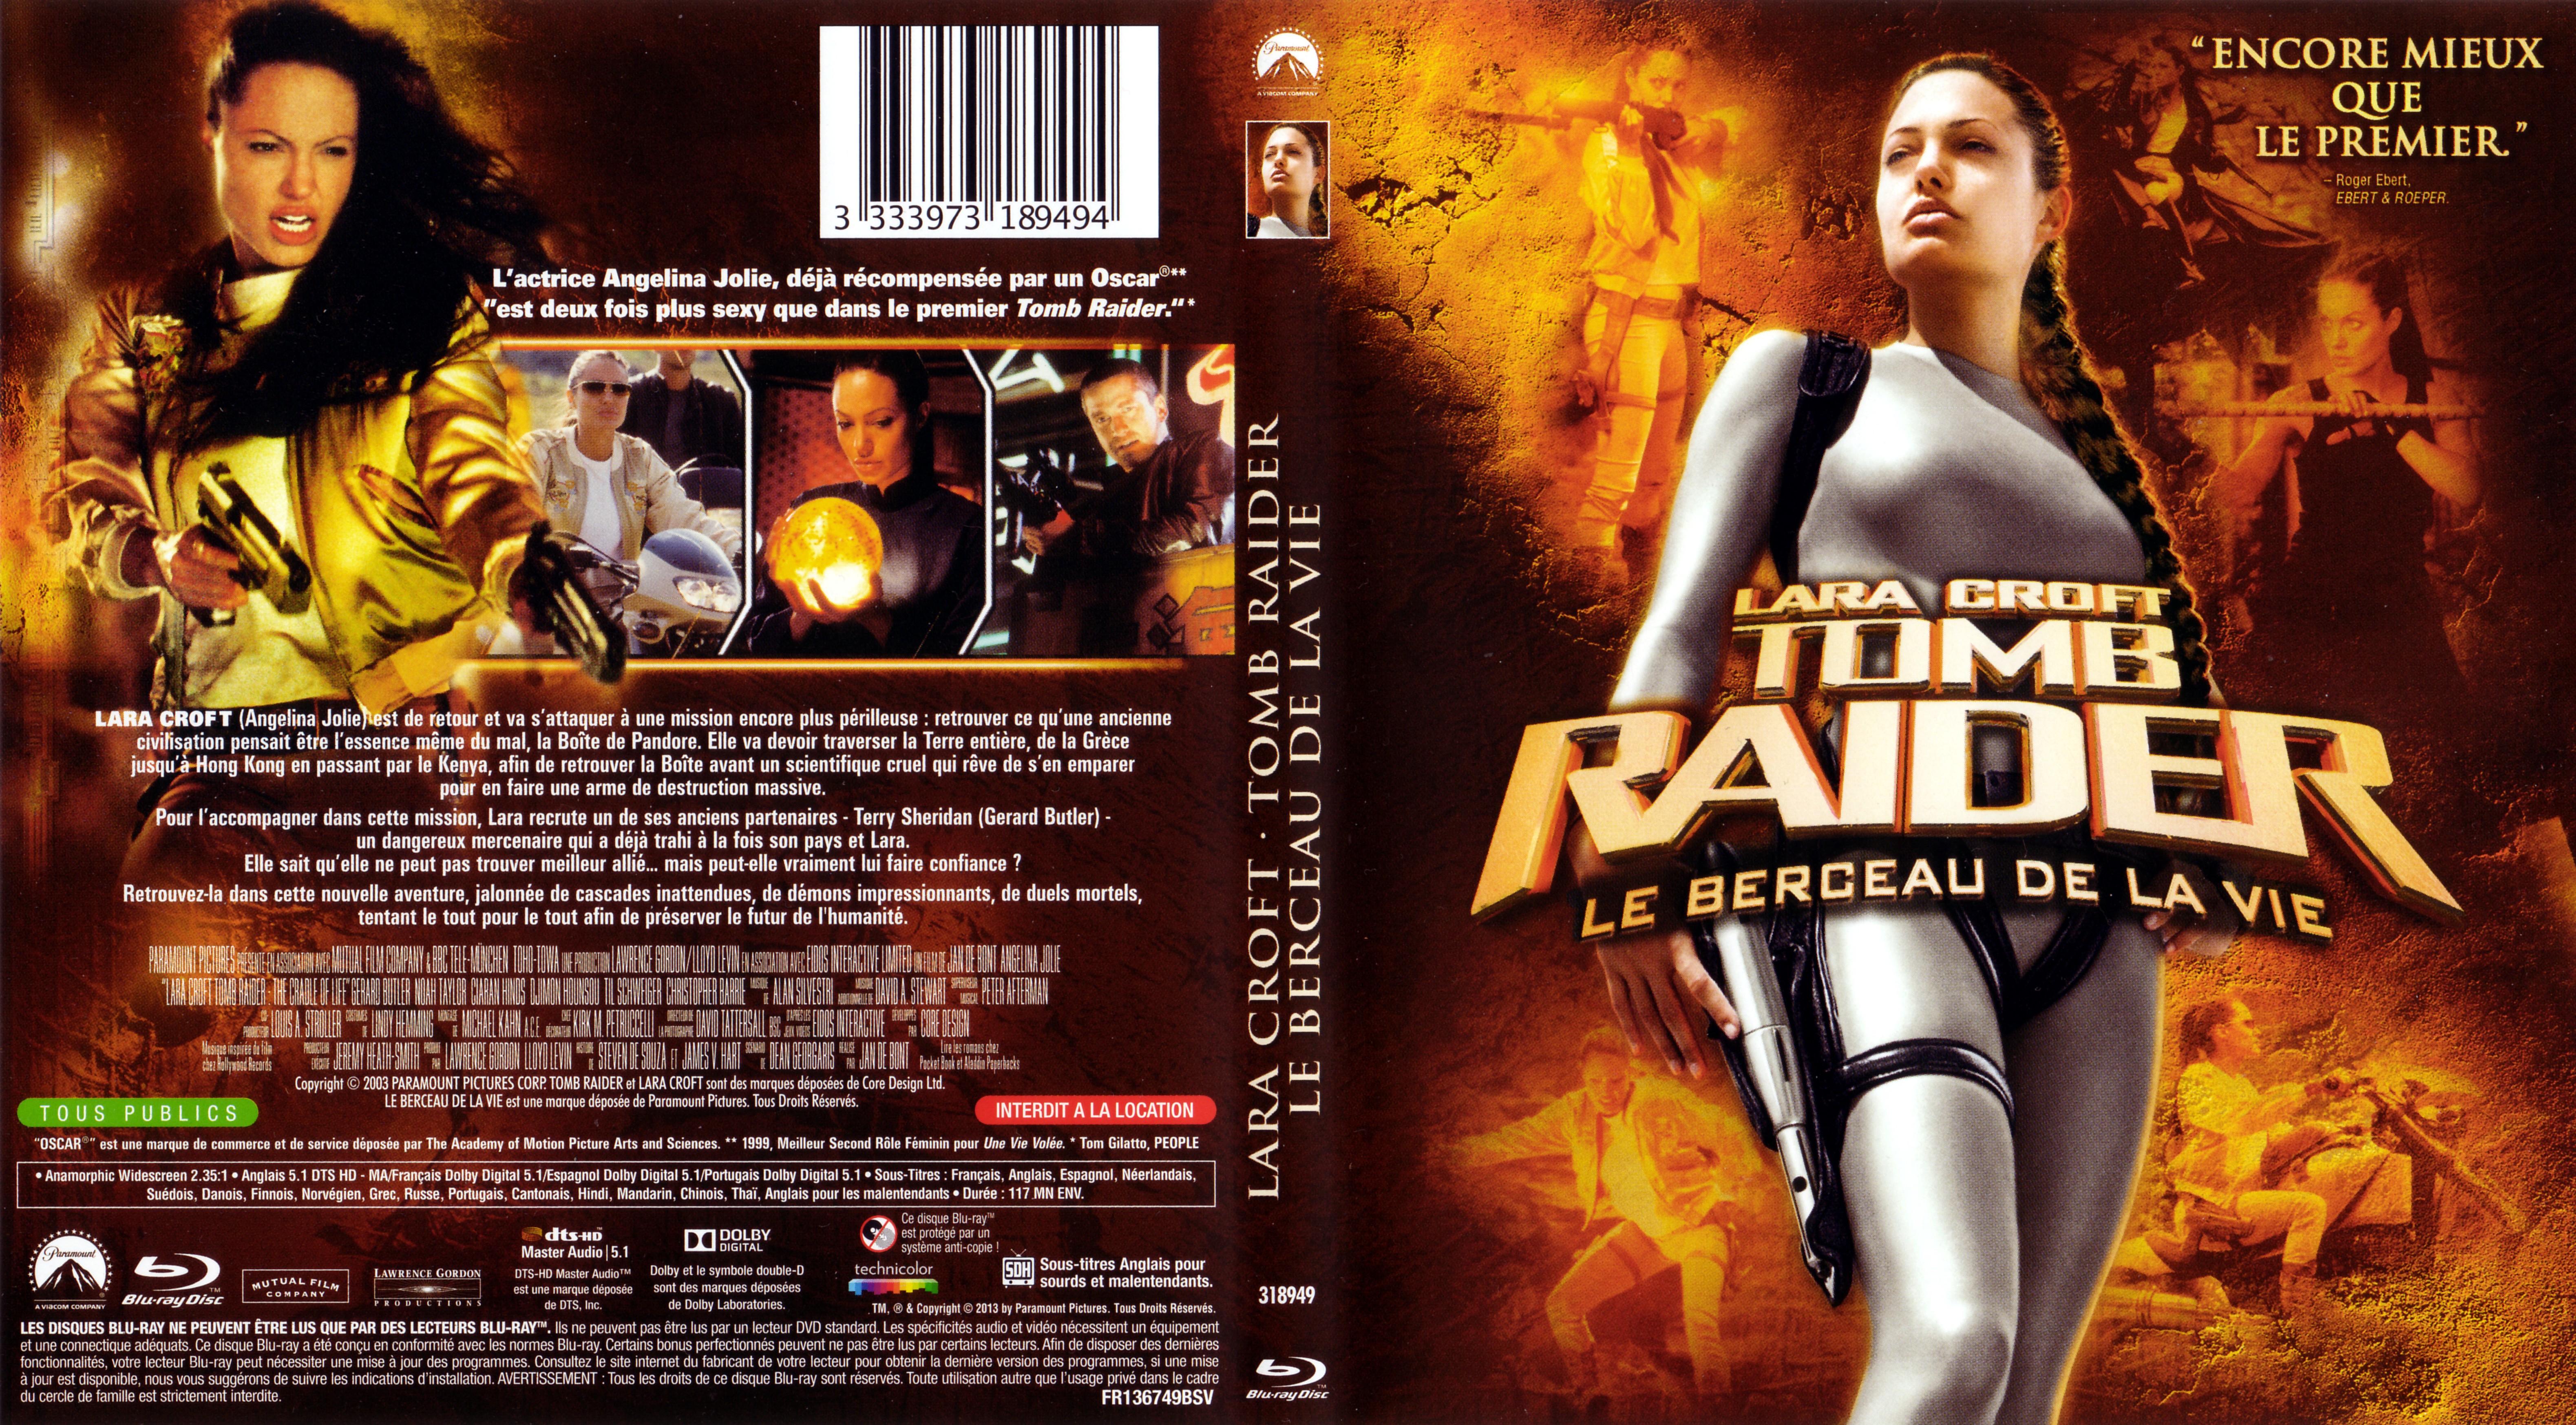 Jaquette DVD Tomb Raider le berceau de la vie (BLU-RAY)